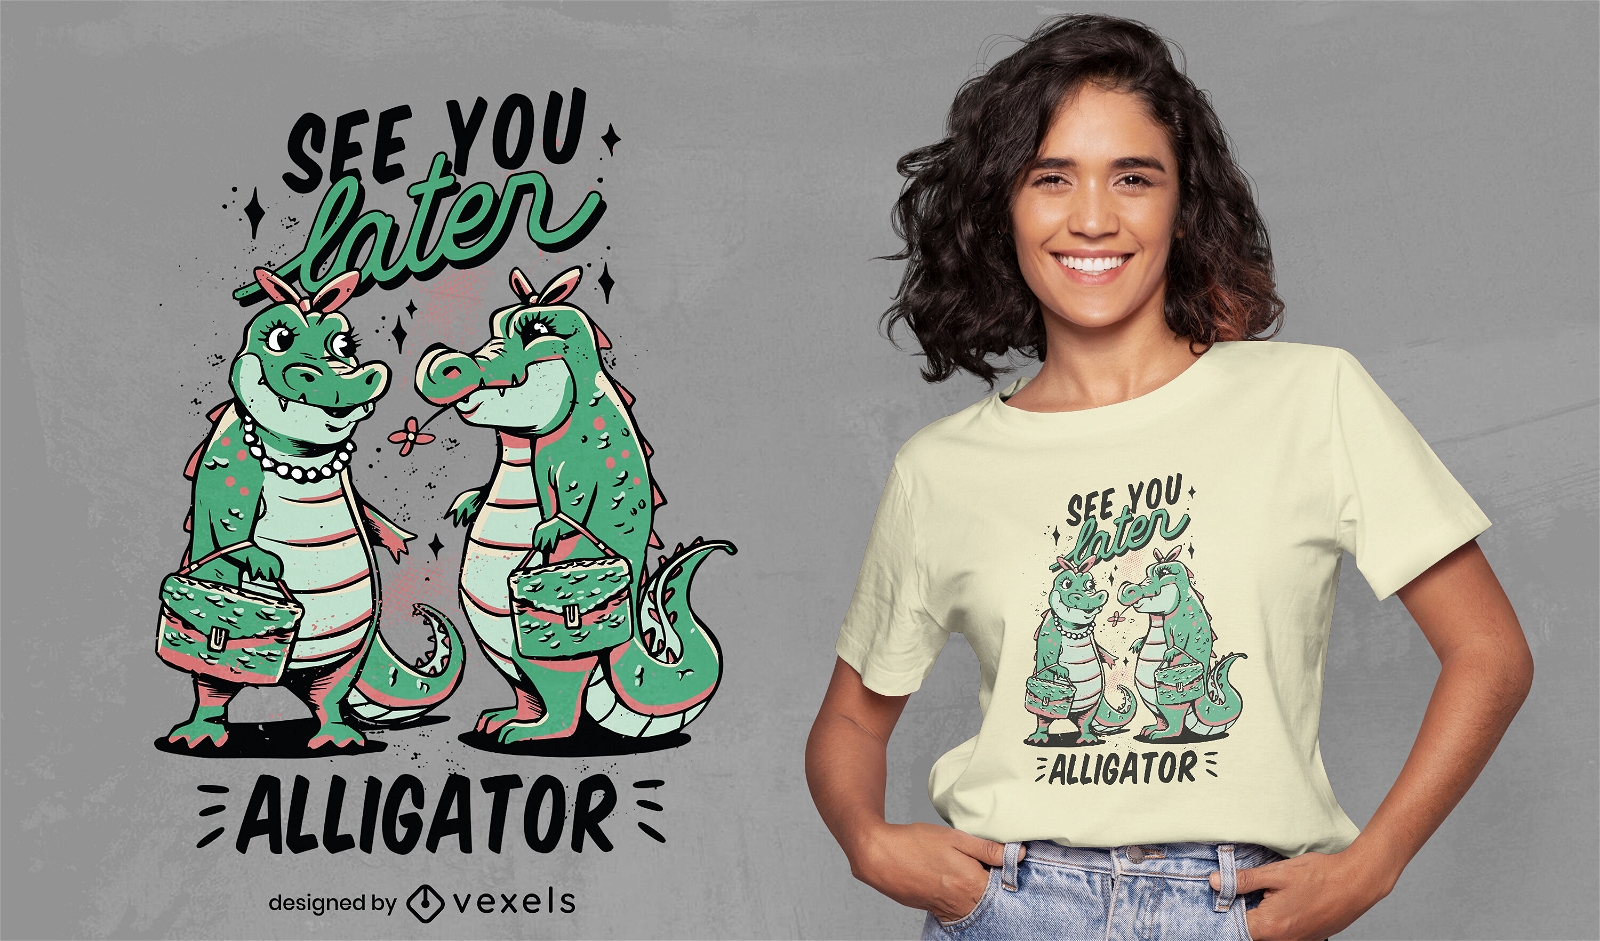 Sch?ne Alligatoren zitieren T-Shirt-Design